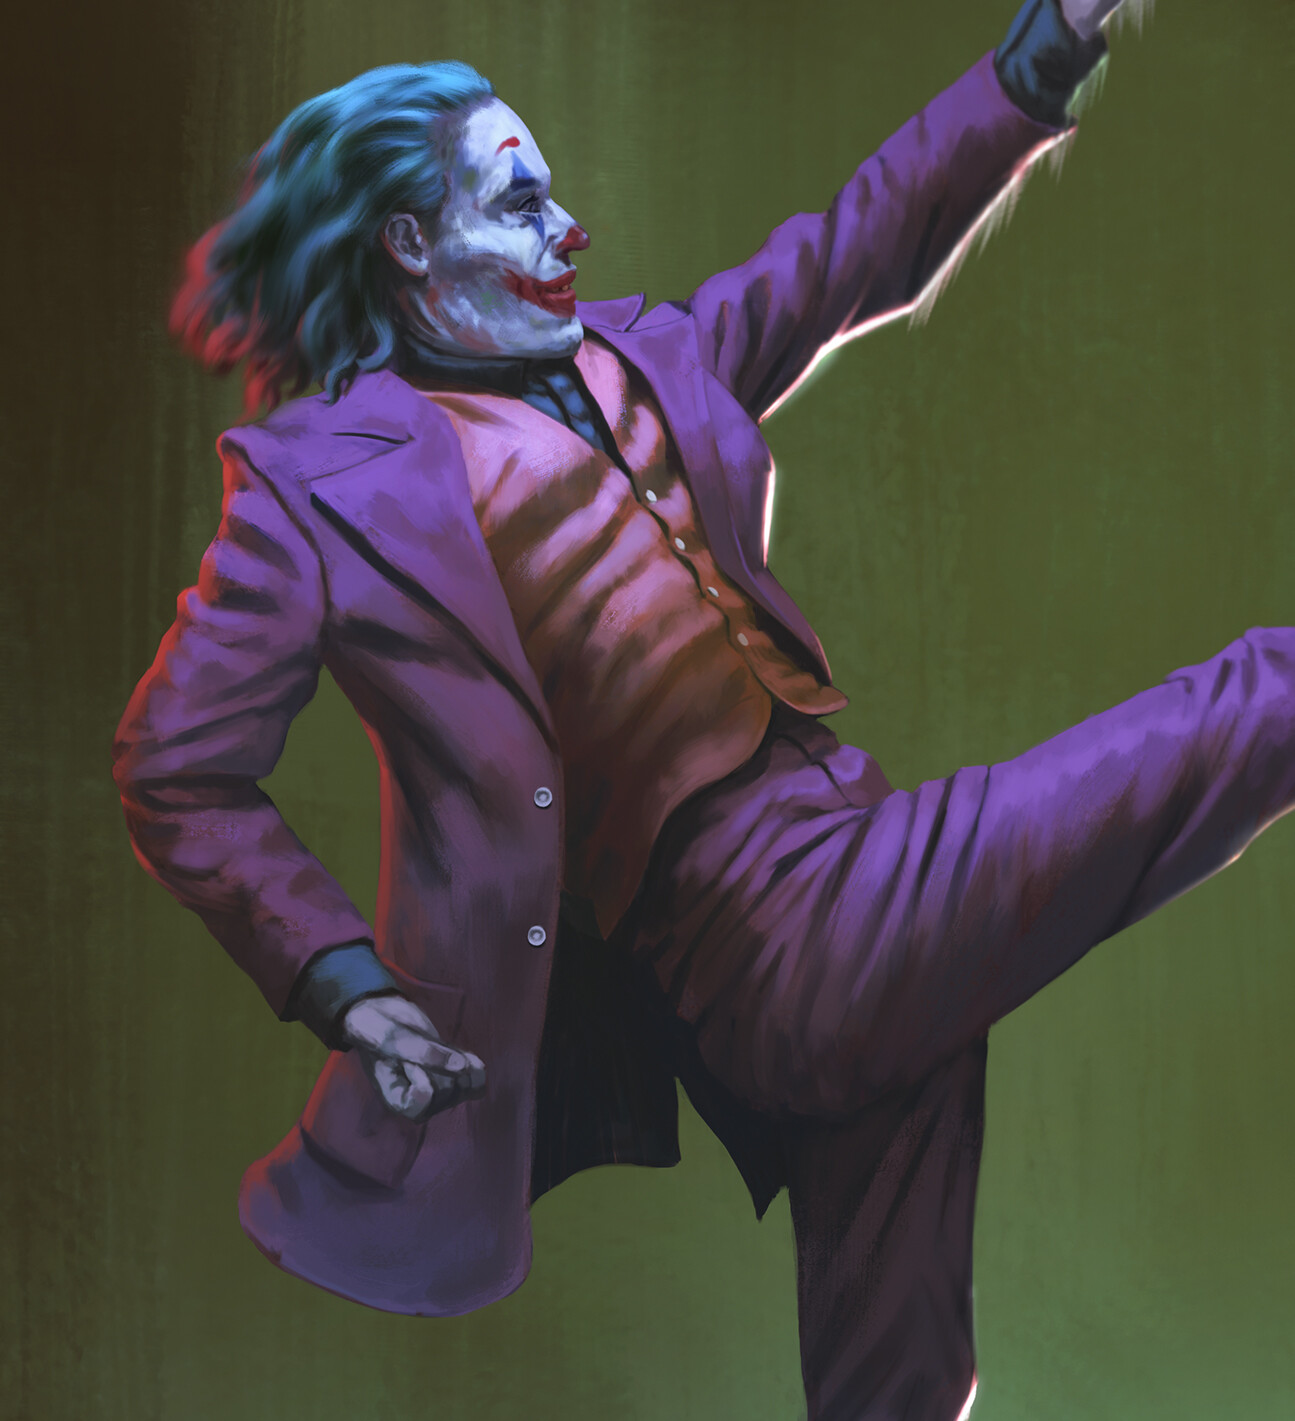 Joker dance by Arb Paninken